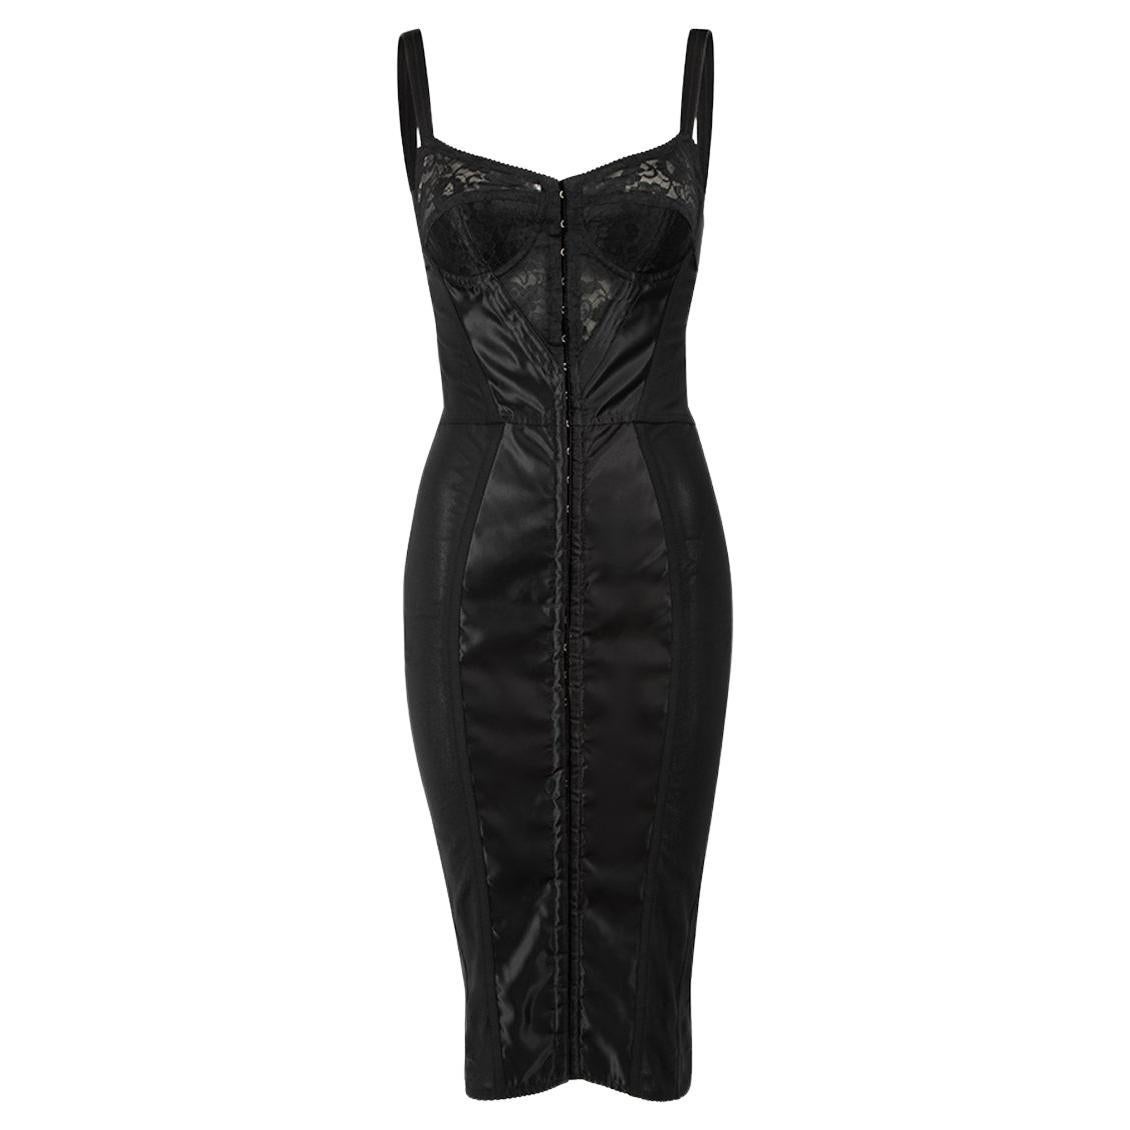 Dolce & Gabbana Black Mesh Corset Dress Size XXS